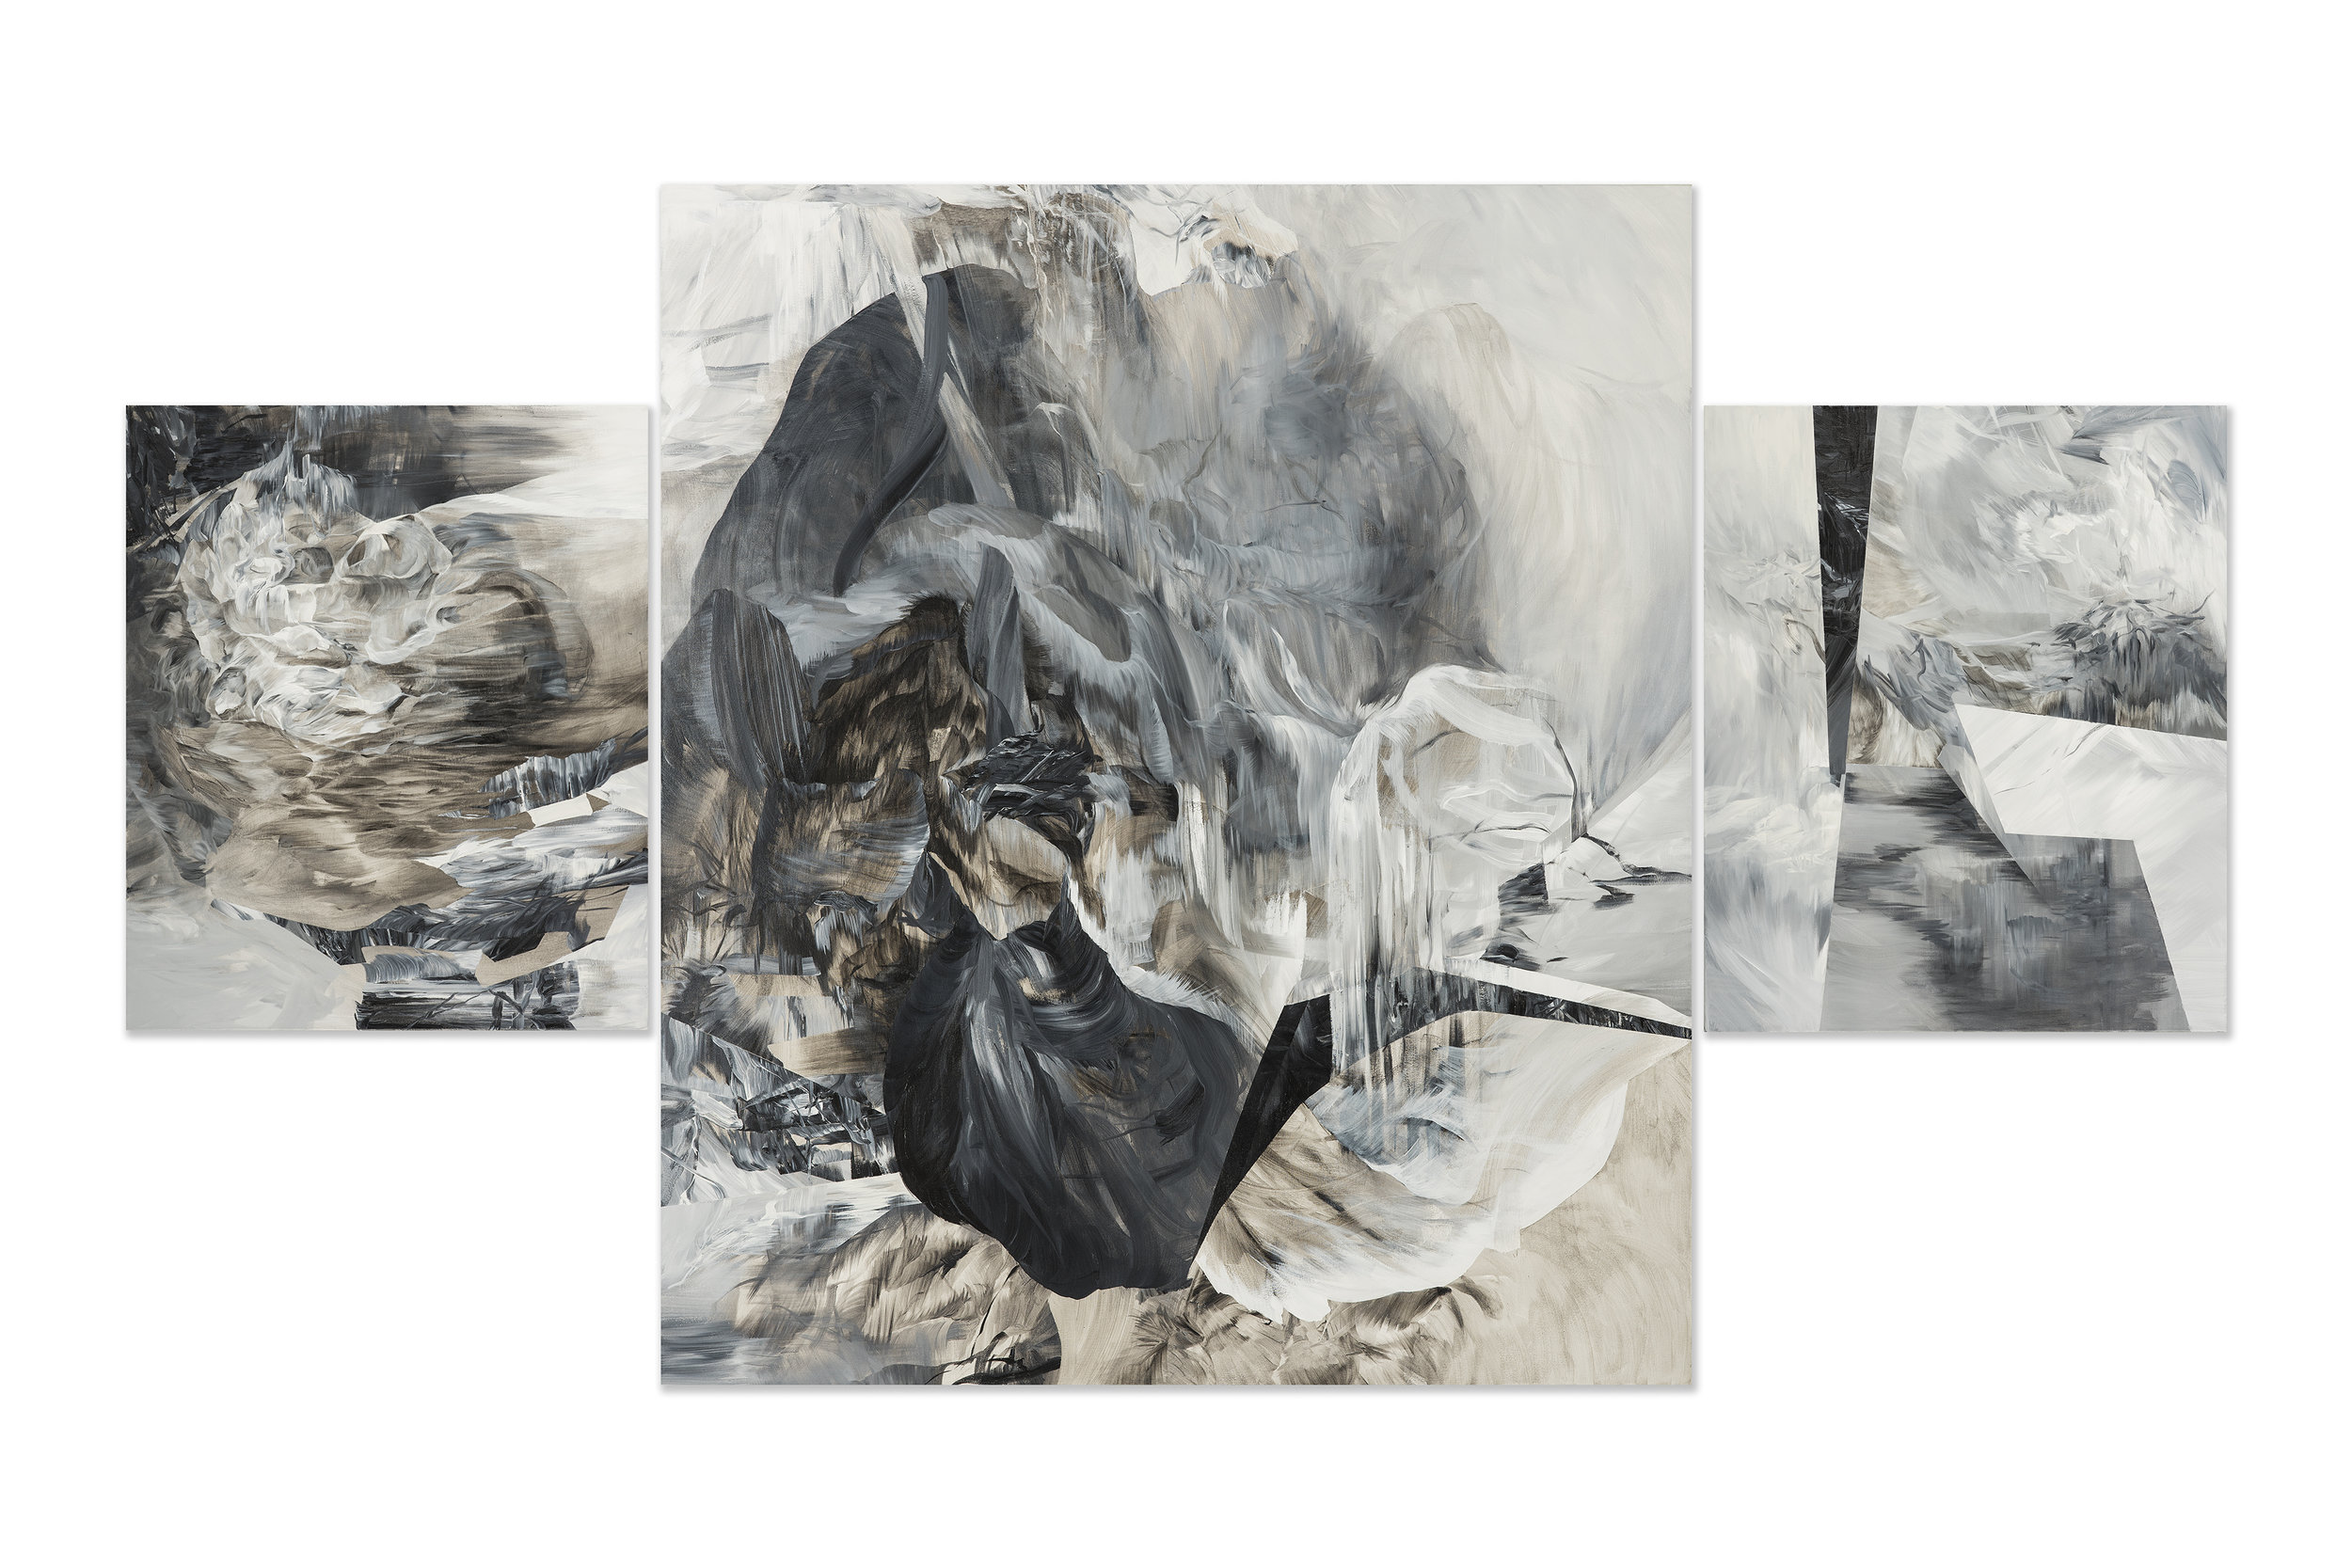   Altar - Triptych , 2014     acrylic on canvas  84" x 144” 